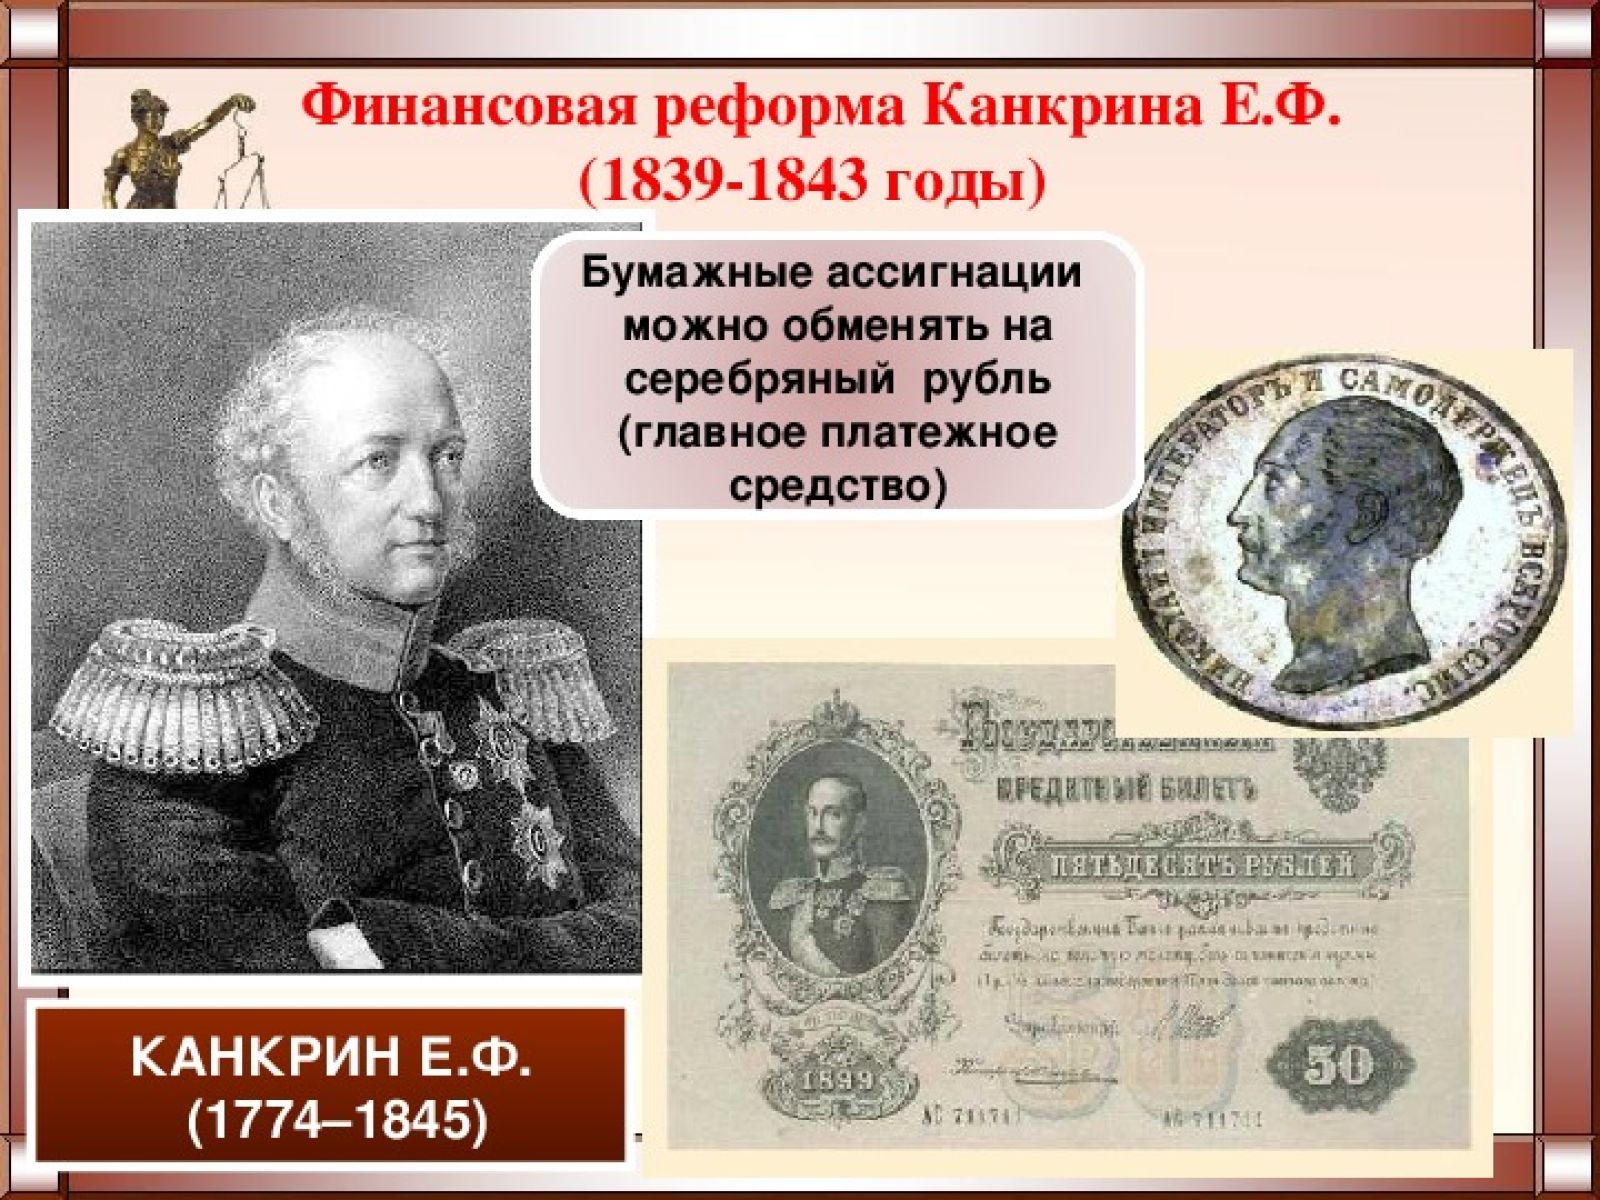 Проводил денежную реформу в российской империи